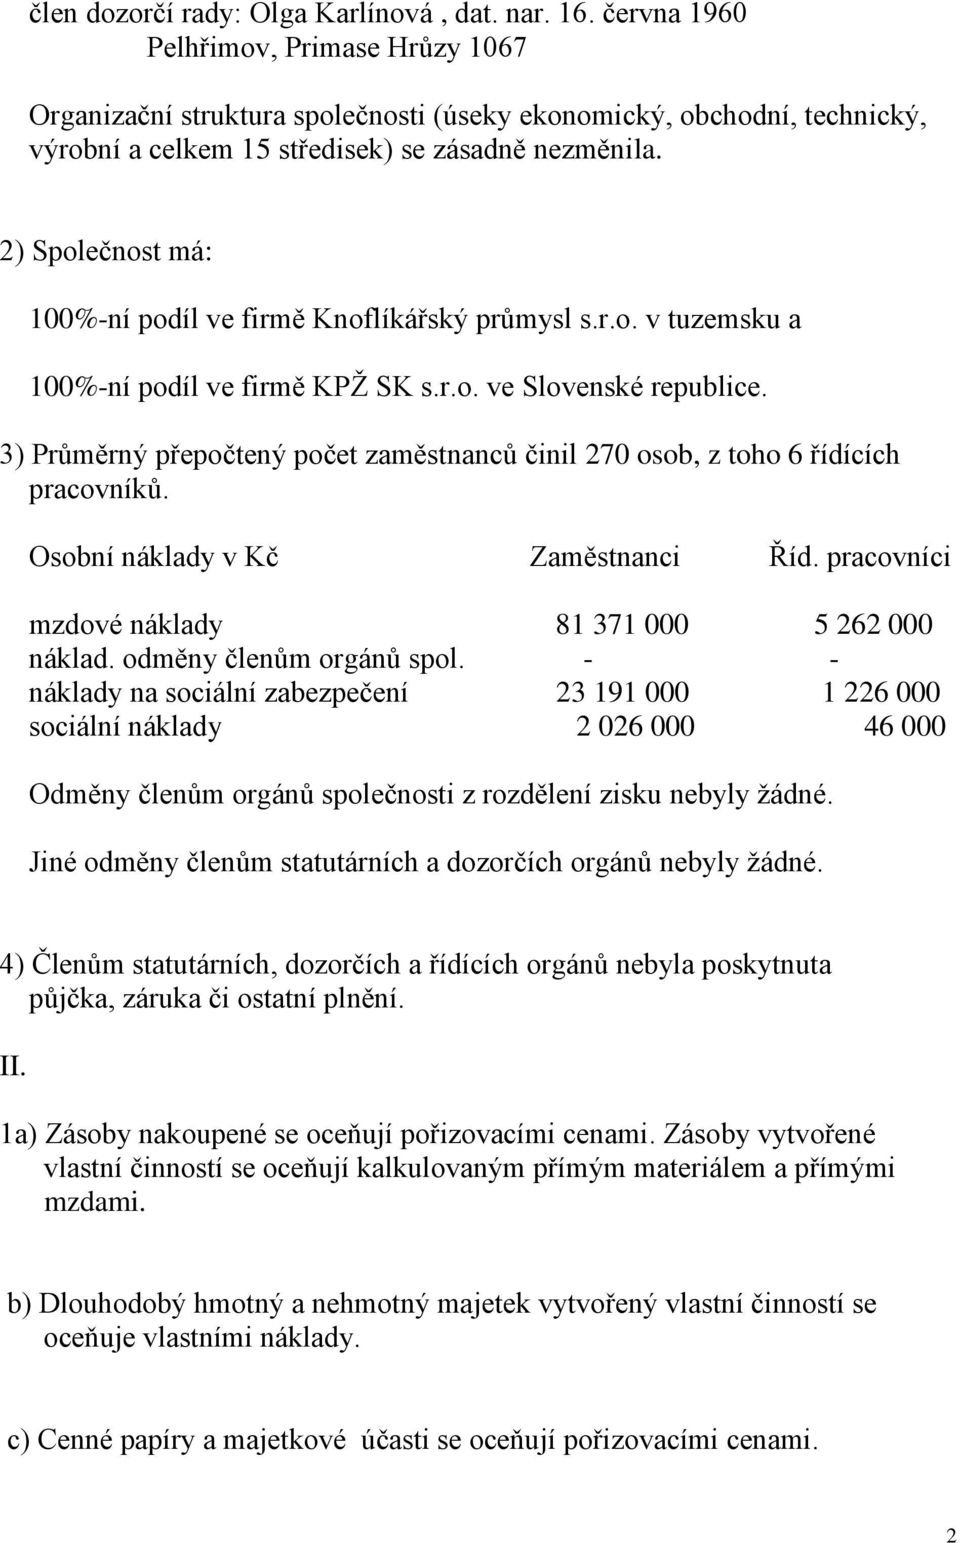 2) Společnost má: 100%-ní podíl ve firmě Knoflíkářský průmysl s.r.o. v tuzemsku a 100%-ní podíl ve firmě KPŽ SK s.r.o. ve Slovenské republice.